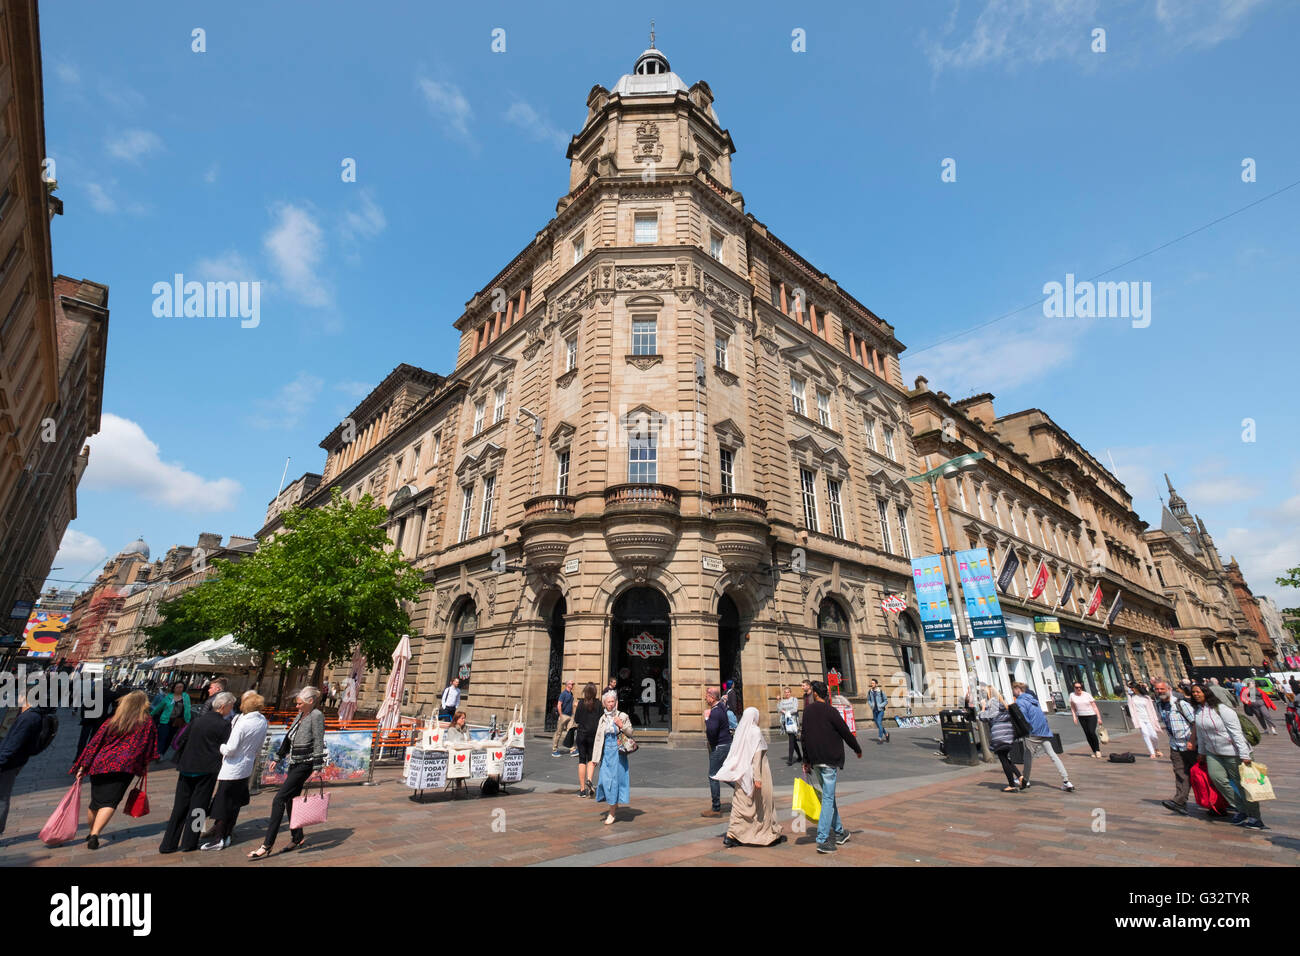 Blick auf historische Gebäude in der Buchanan Street, beliebte Einkaufsstraße in zentralen Glasgow Vereinigtes Königreich Stockfoto